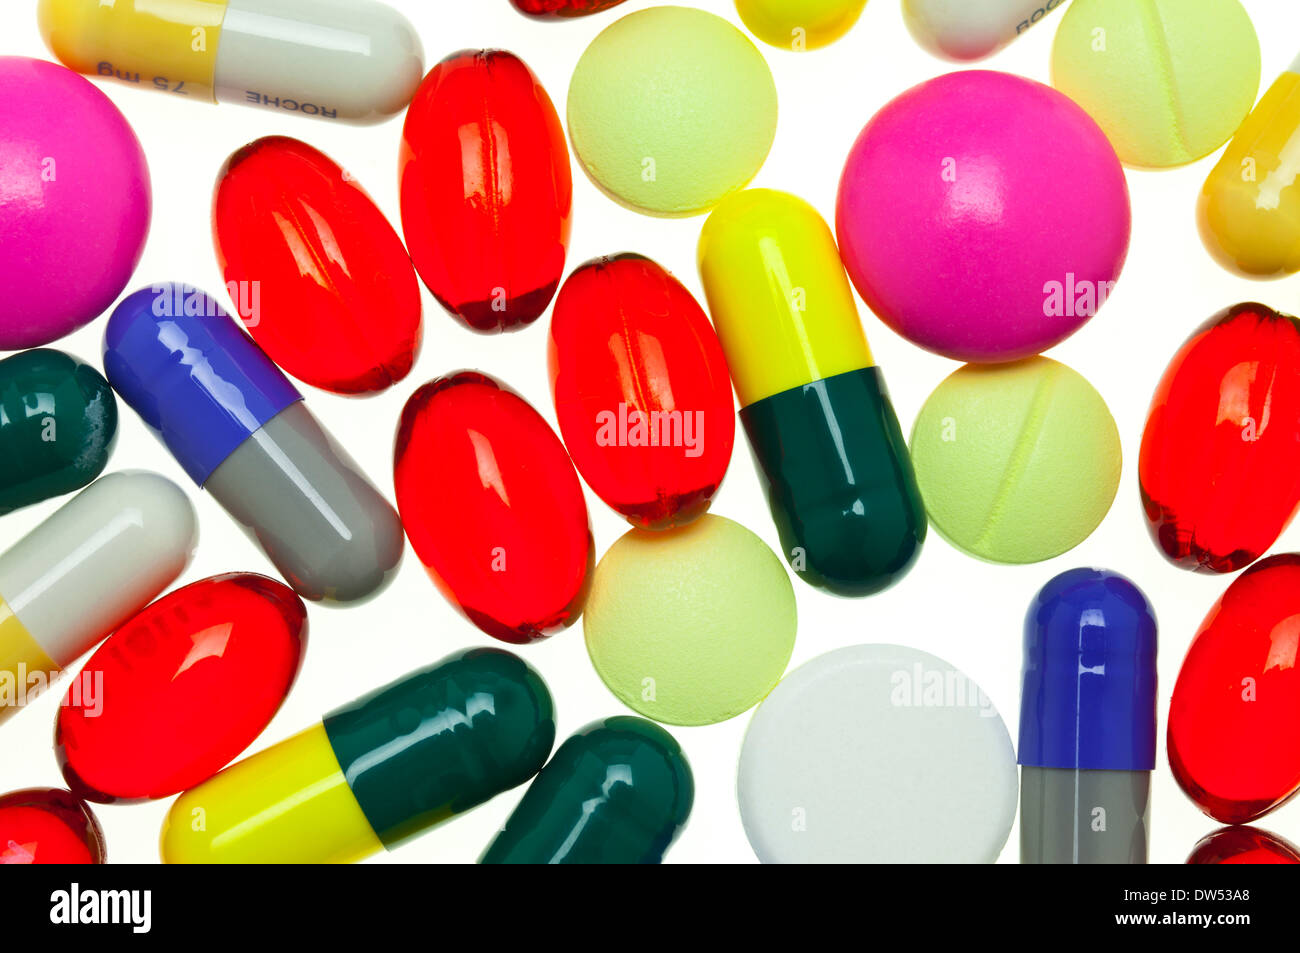 Viele bunte verschiedene Medikamente TABLETTEN KAPSELN Medikamente Pillen auf weißem Hintergrund Pille, Tablette, Kapsel, Medikament Stockfoto